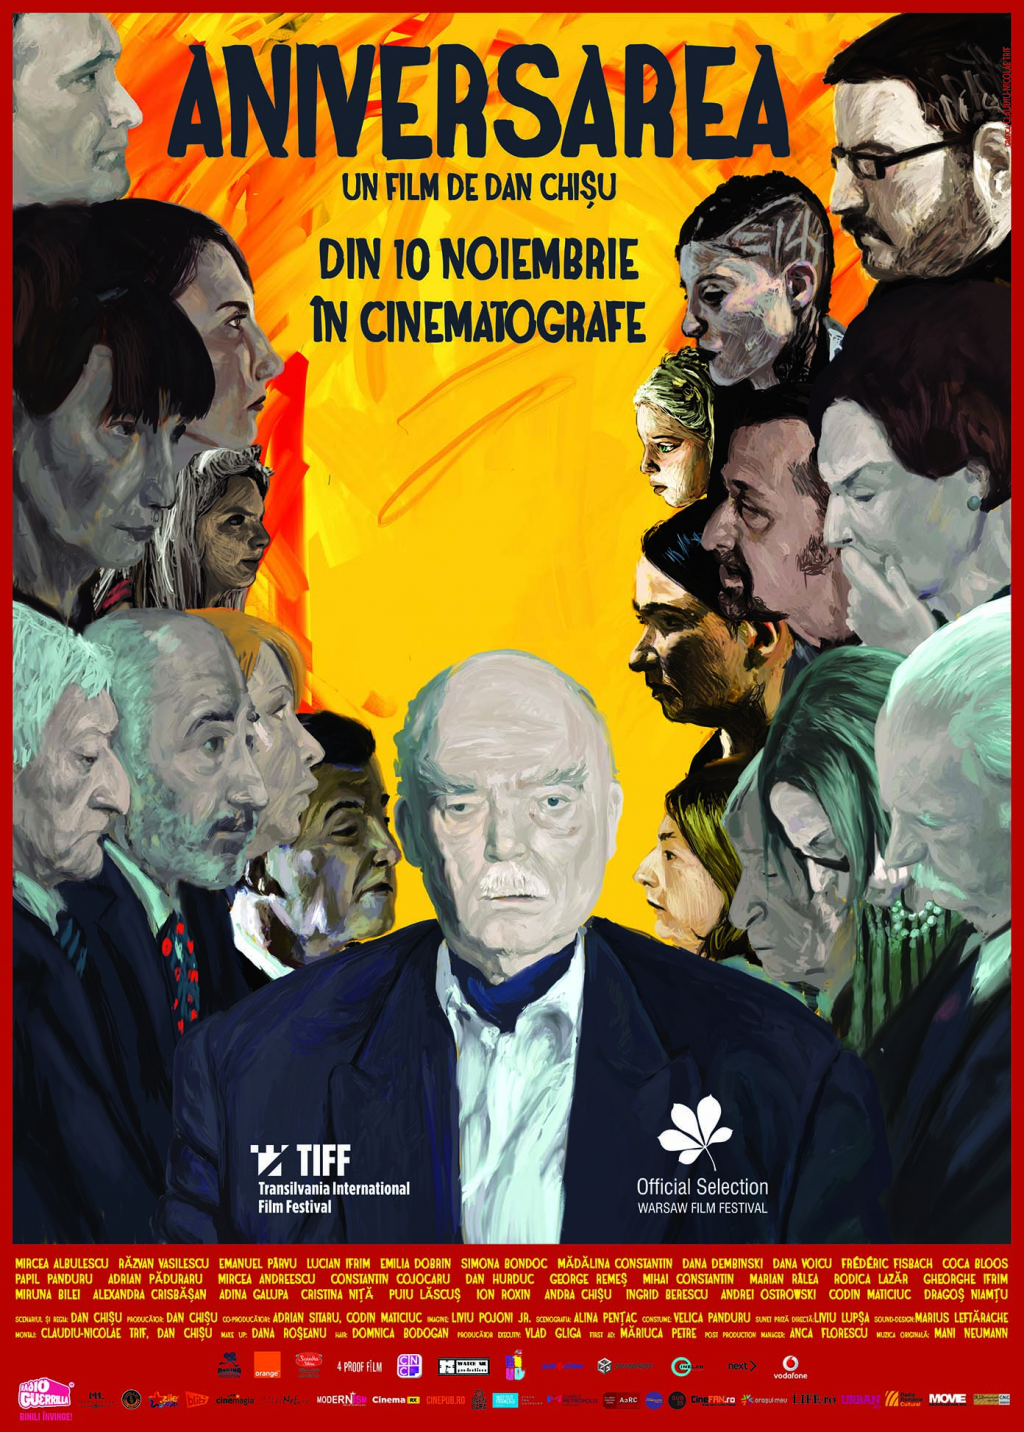 Filmul Aniversarea de Dan Chisu la Festivalul European de Film din Serbia